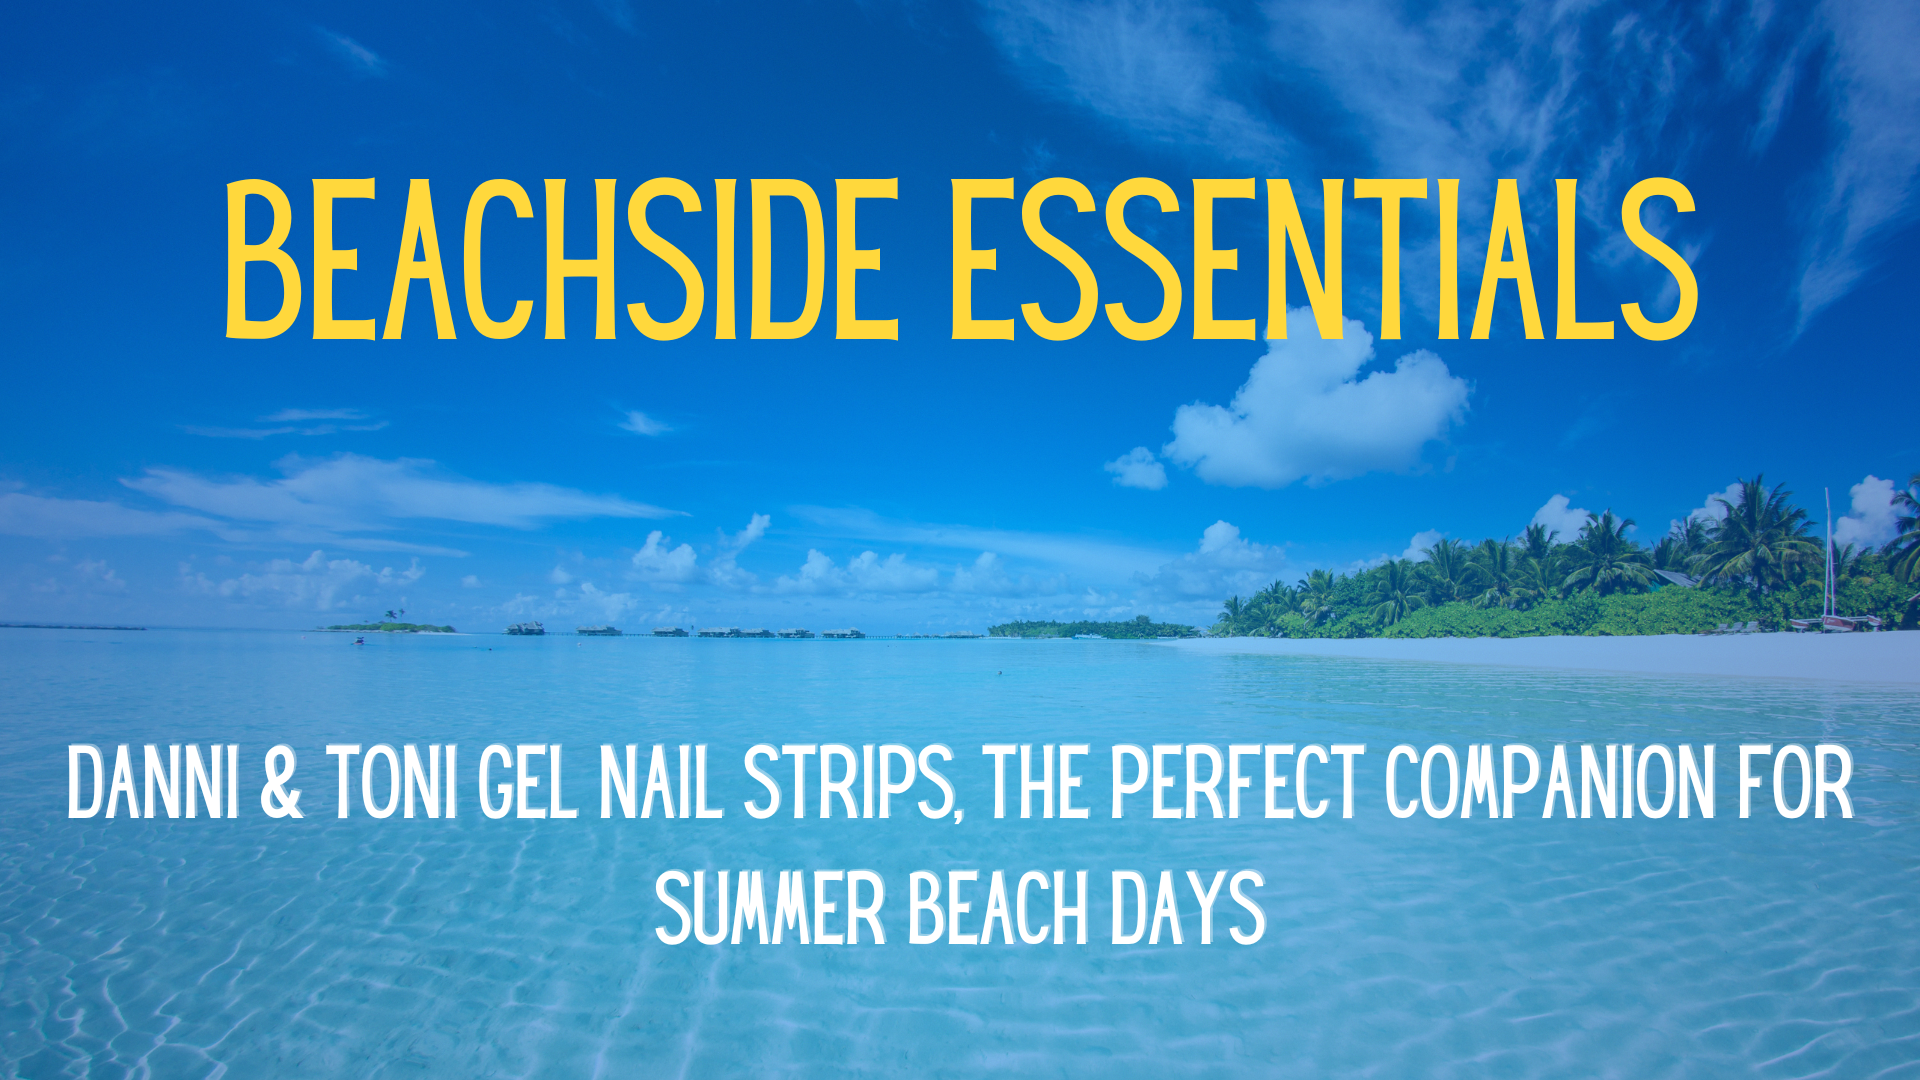 Beachside Essentials: Danni & Toni Gel Nail Strips, the Perfect Companion for Summer Beach Days